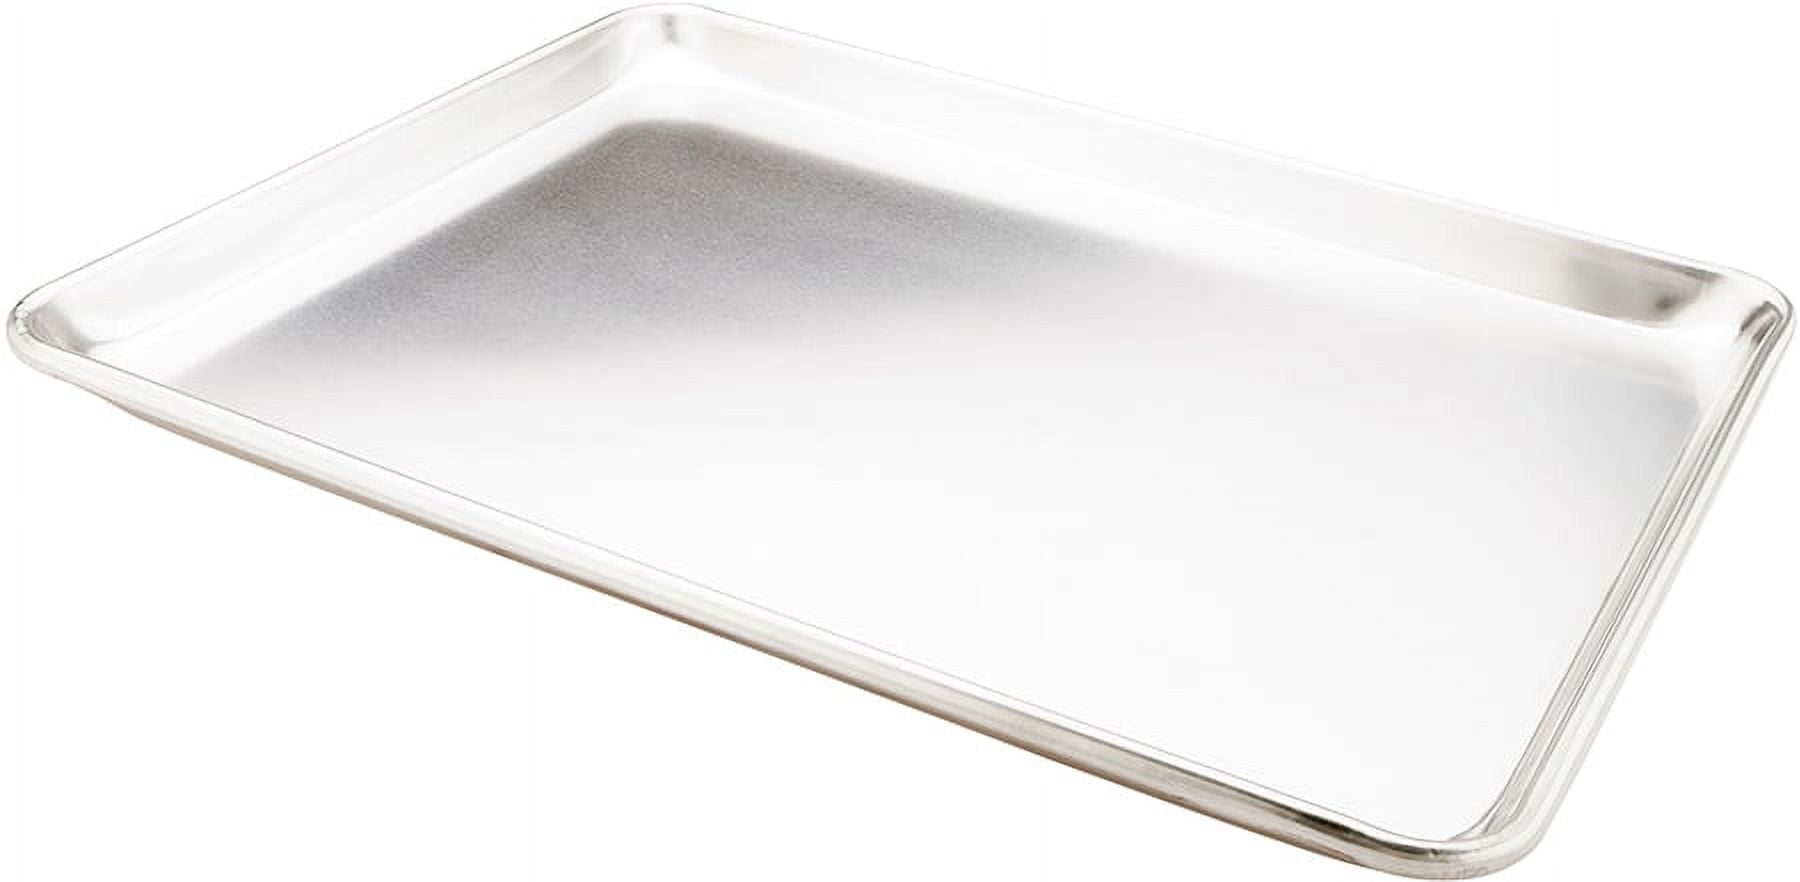 Large Aluminum Sheet Pan 21 x 15 and Silicone Baking Mat » NUCU